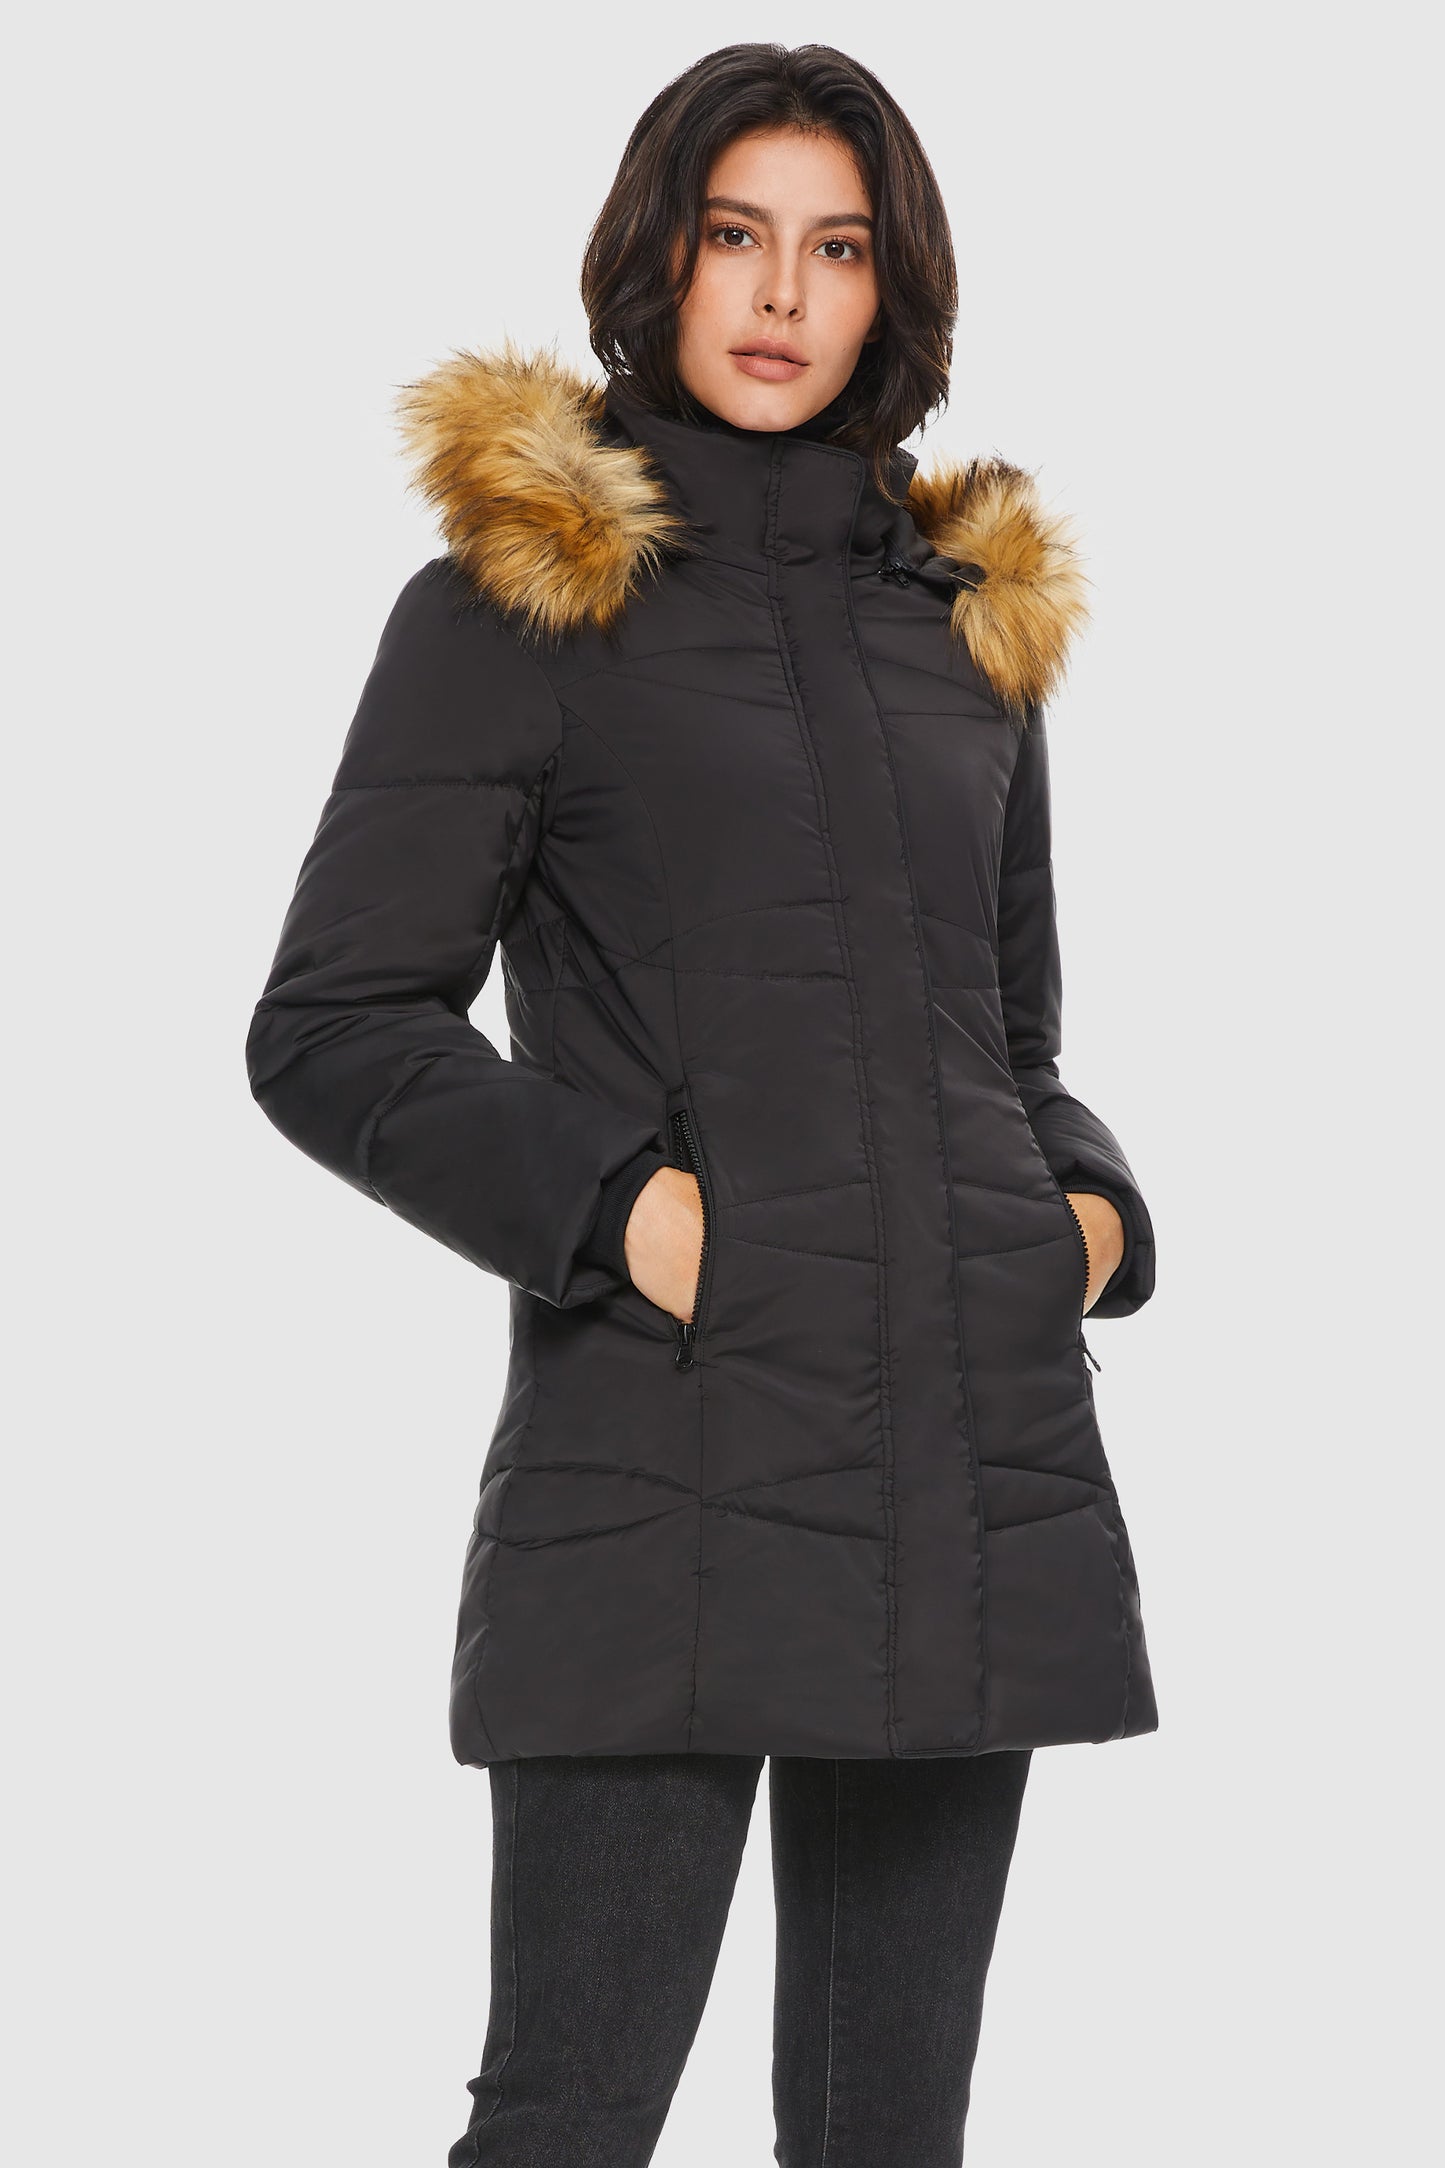 Insulated Jacket Zip-up Winter Coat